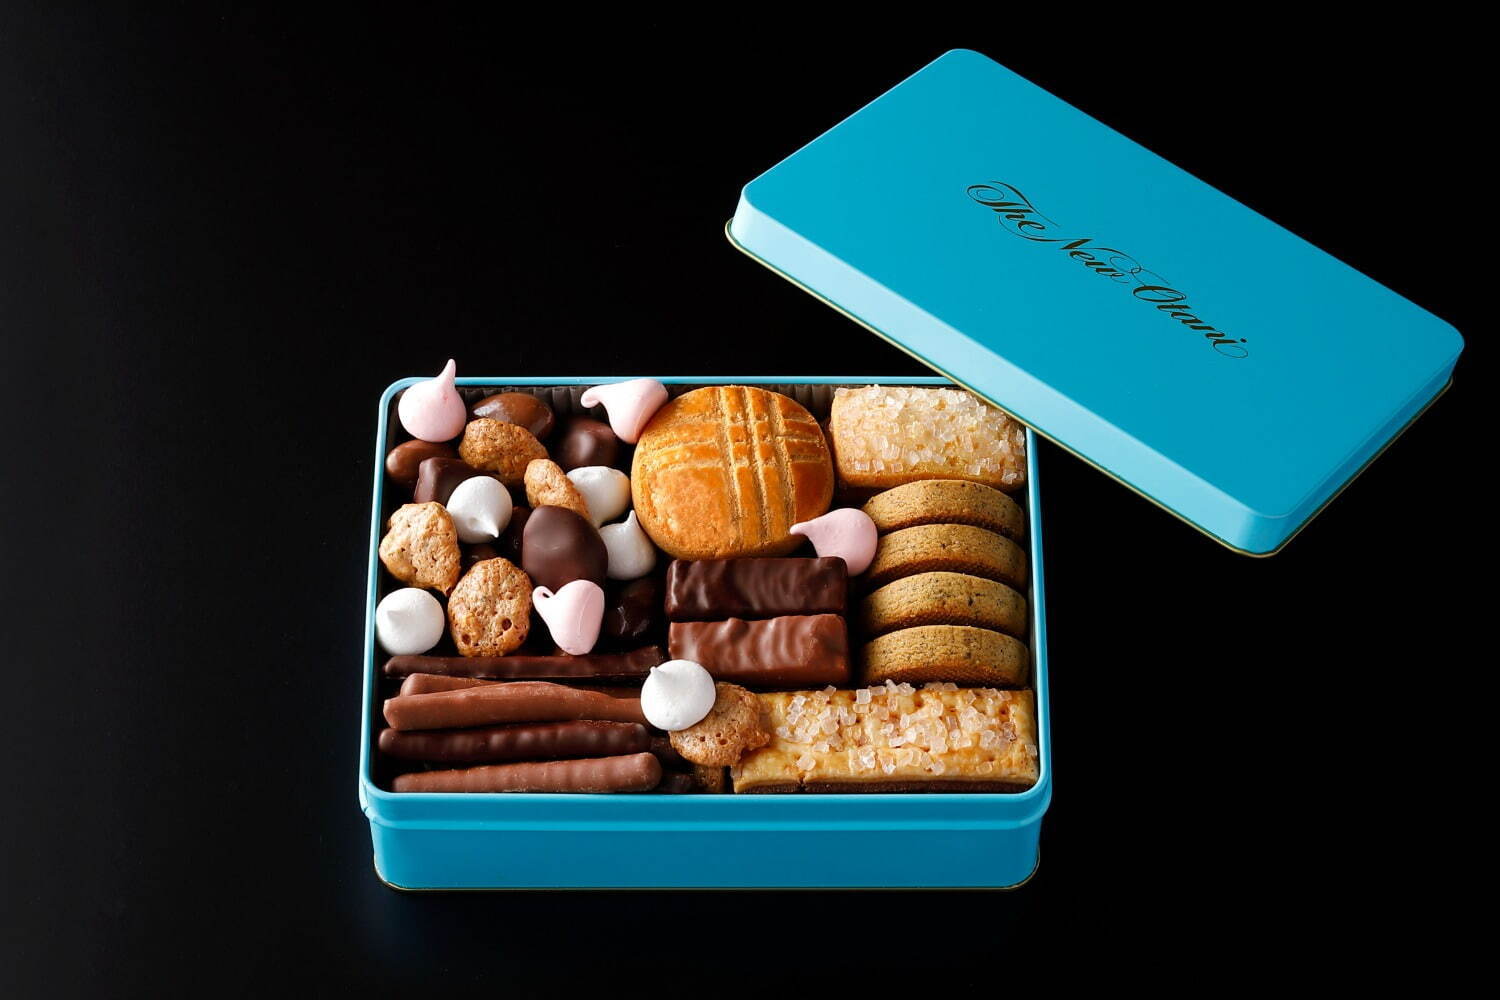 SATSUKIチョコレート＆クッキー Sサイズ 3,456円、Mサイズ 6,912円、Lサイズ 14,040円